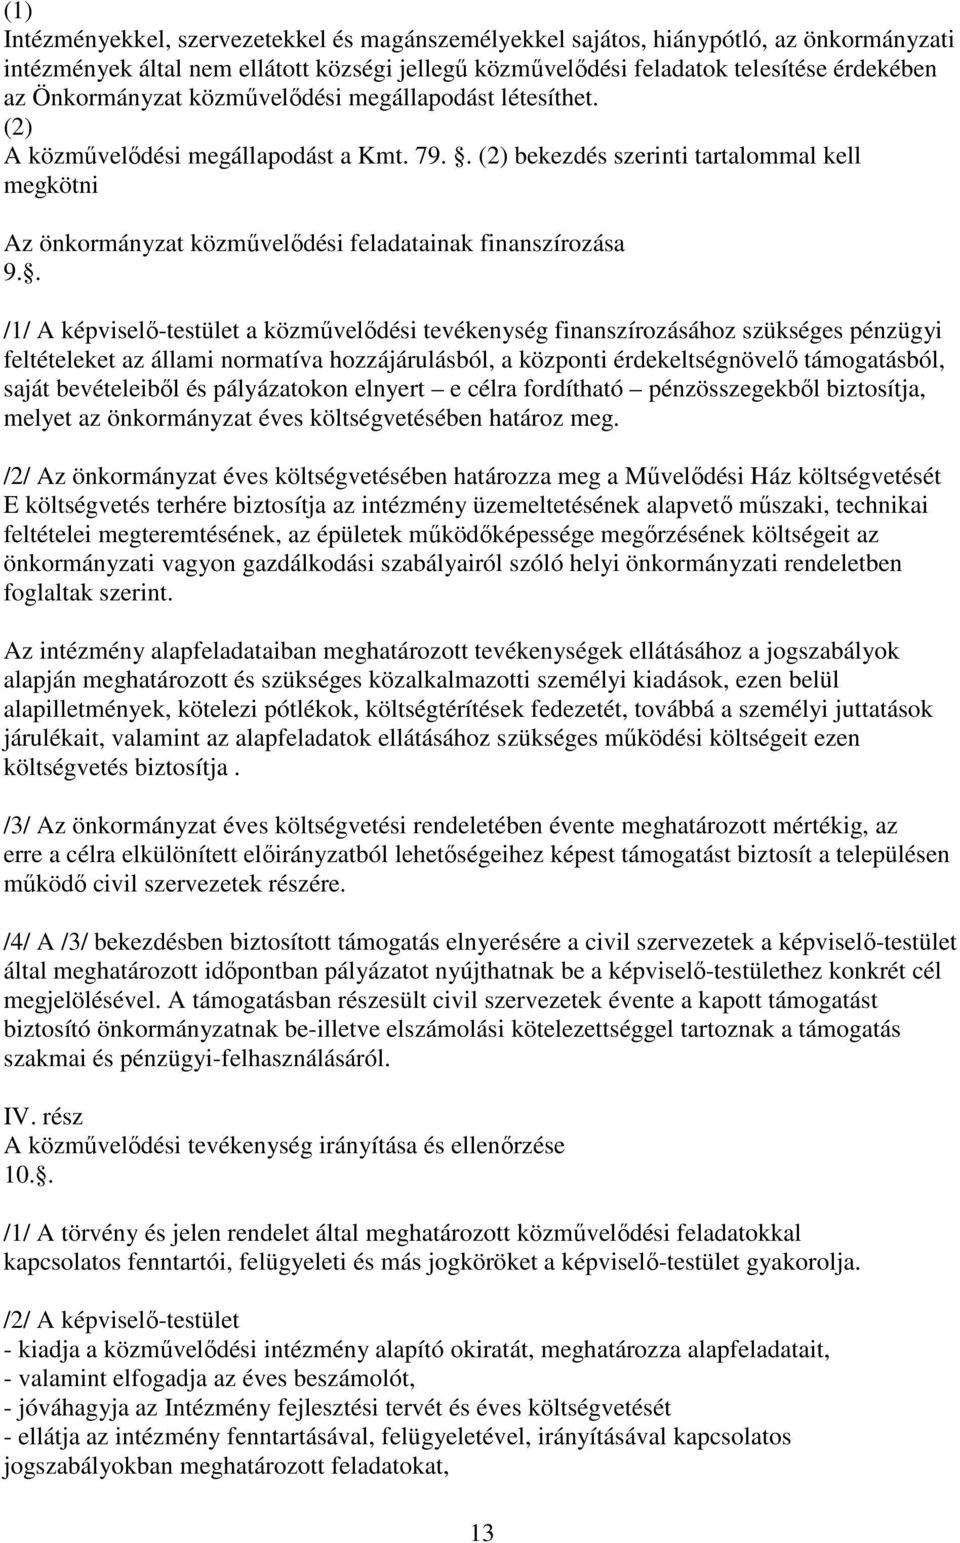 . (2) bekezdés szerinti tartalommal kell megkötni Az önkormányzat közmővelıdési feladatainak finanszírozása 9.